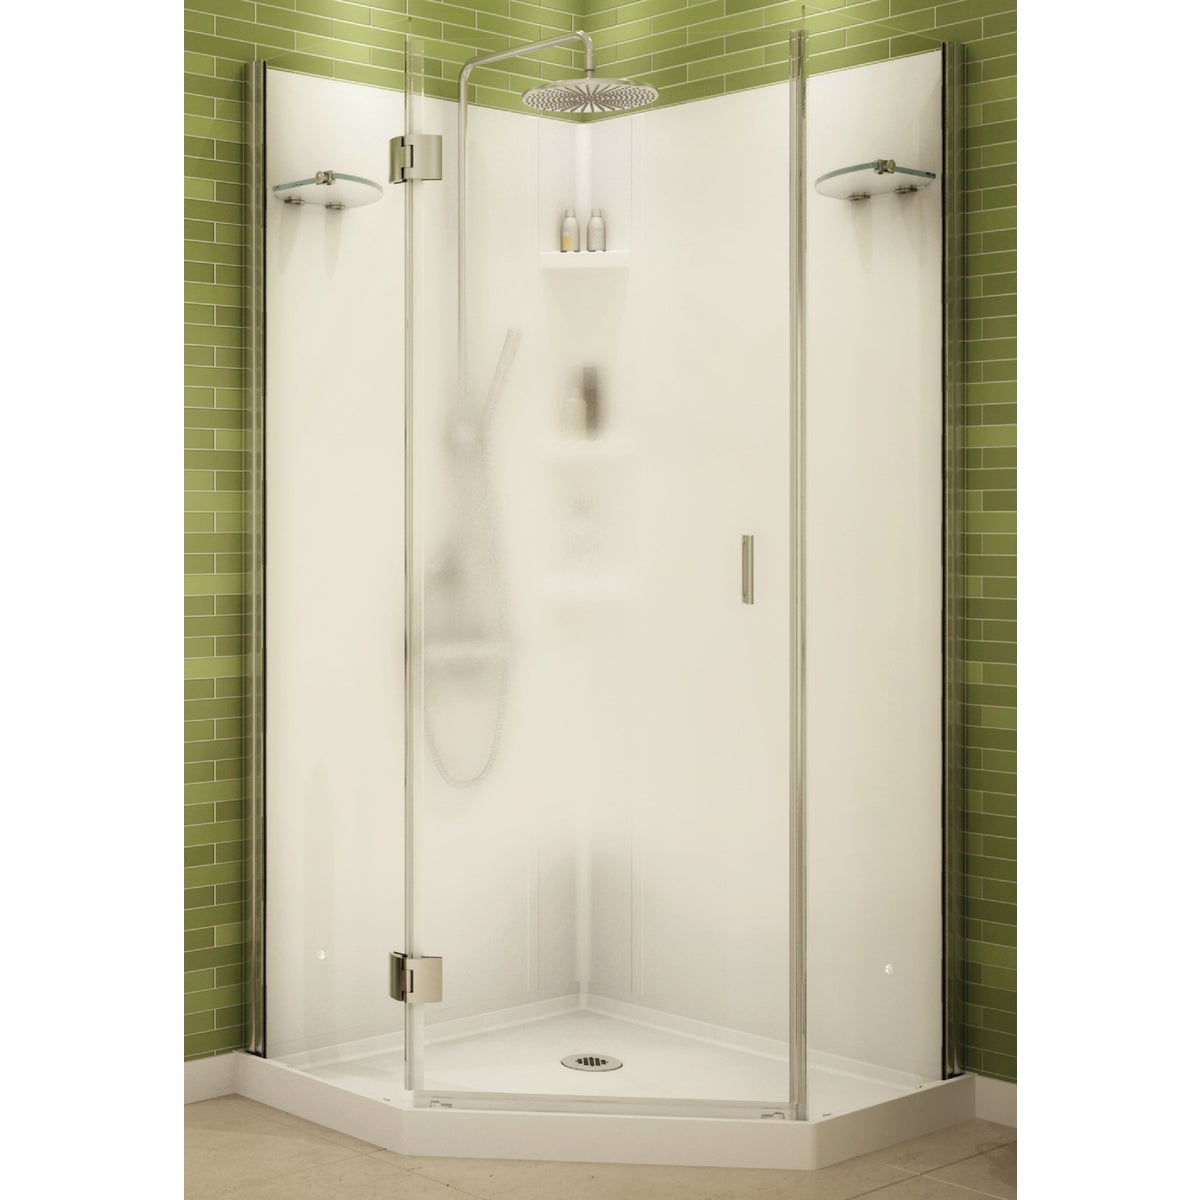 Item 464893, White frameless glass shower enclosure.